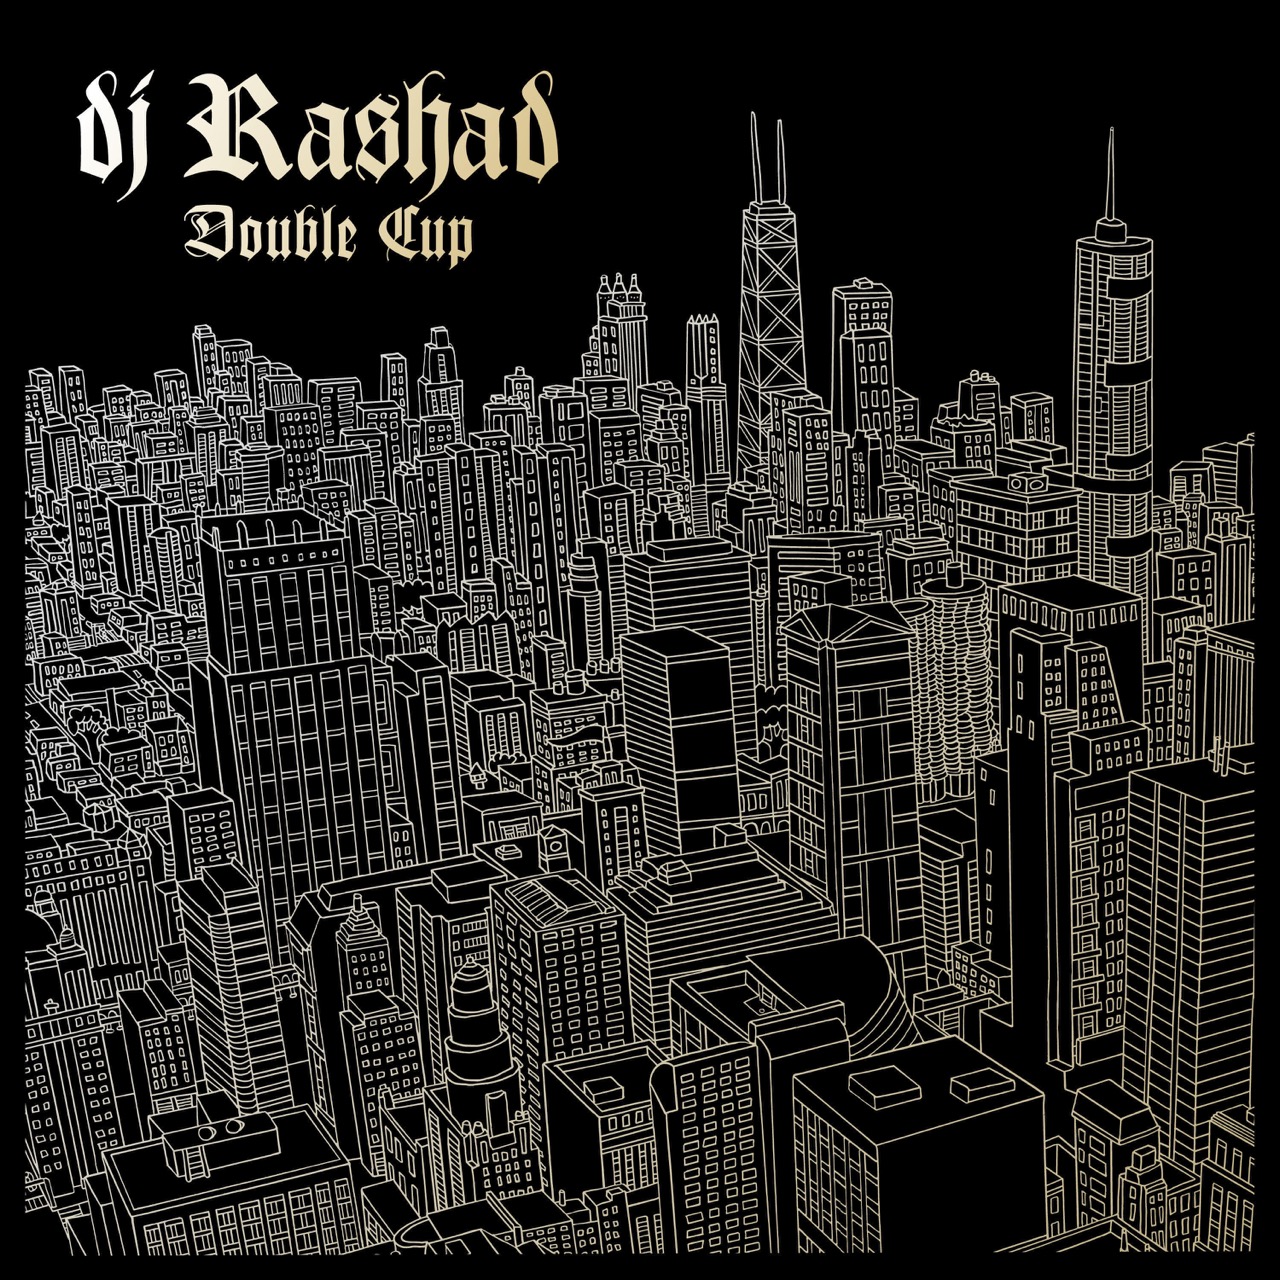 DJ Rashad vinyl